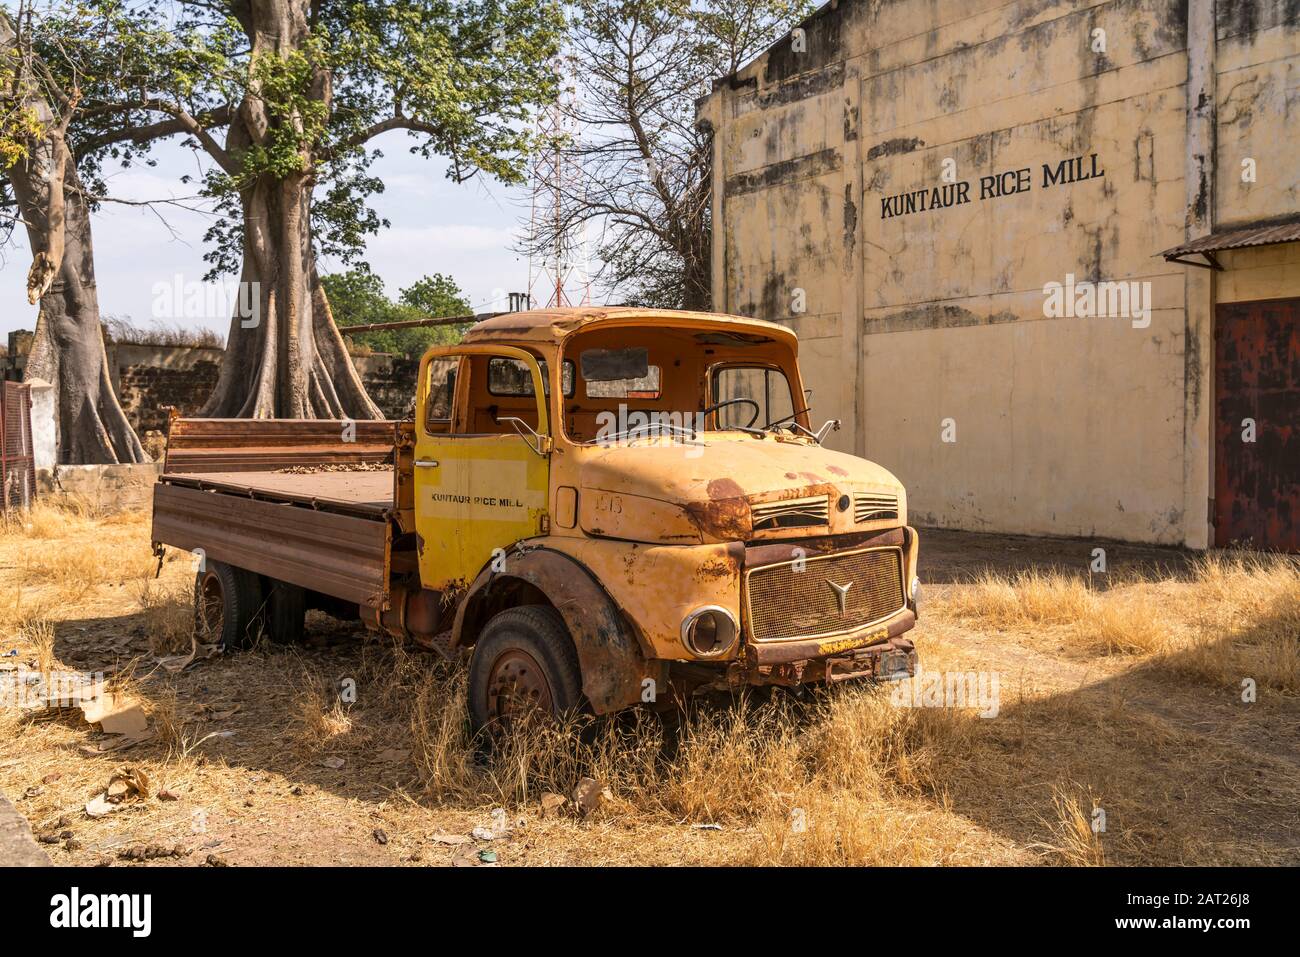 LKW Rack vor der verlassenen ehemaligen Reis Mühle en Kunteur , Gambia, Westafrika | camión naufragado en el antiguo molino de arroz abandonado en Kuntaur, Gam Foto de stock